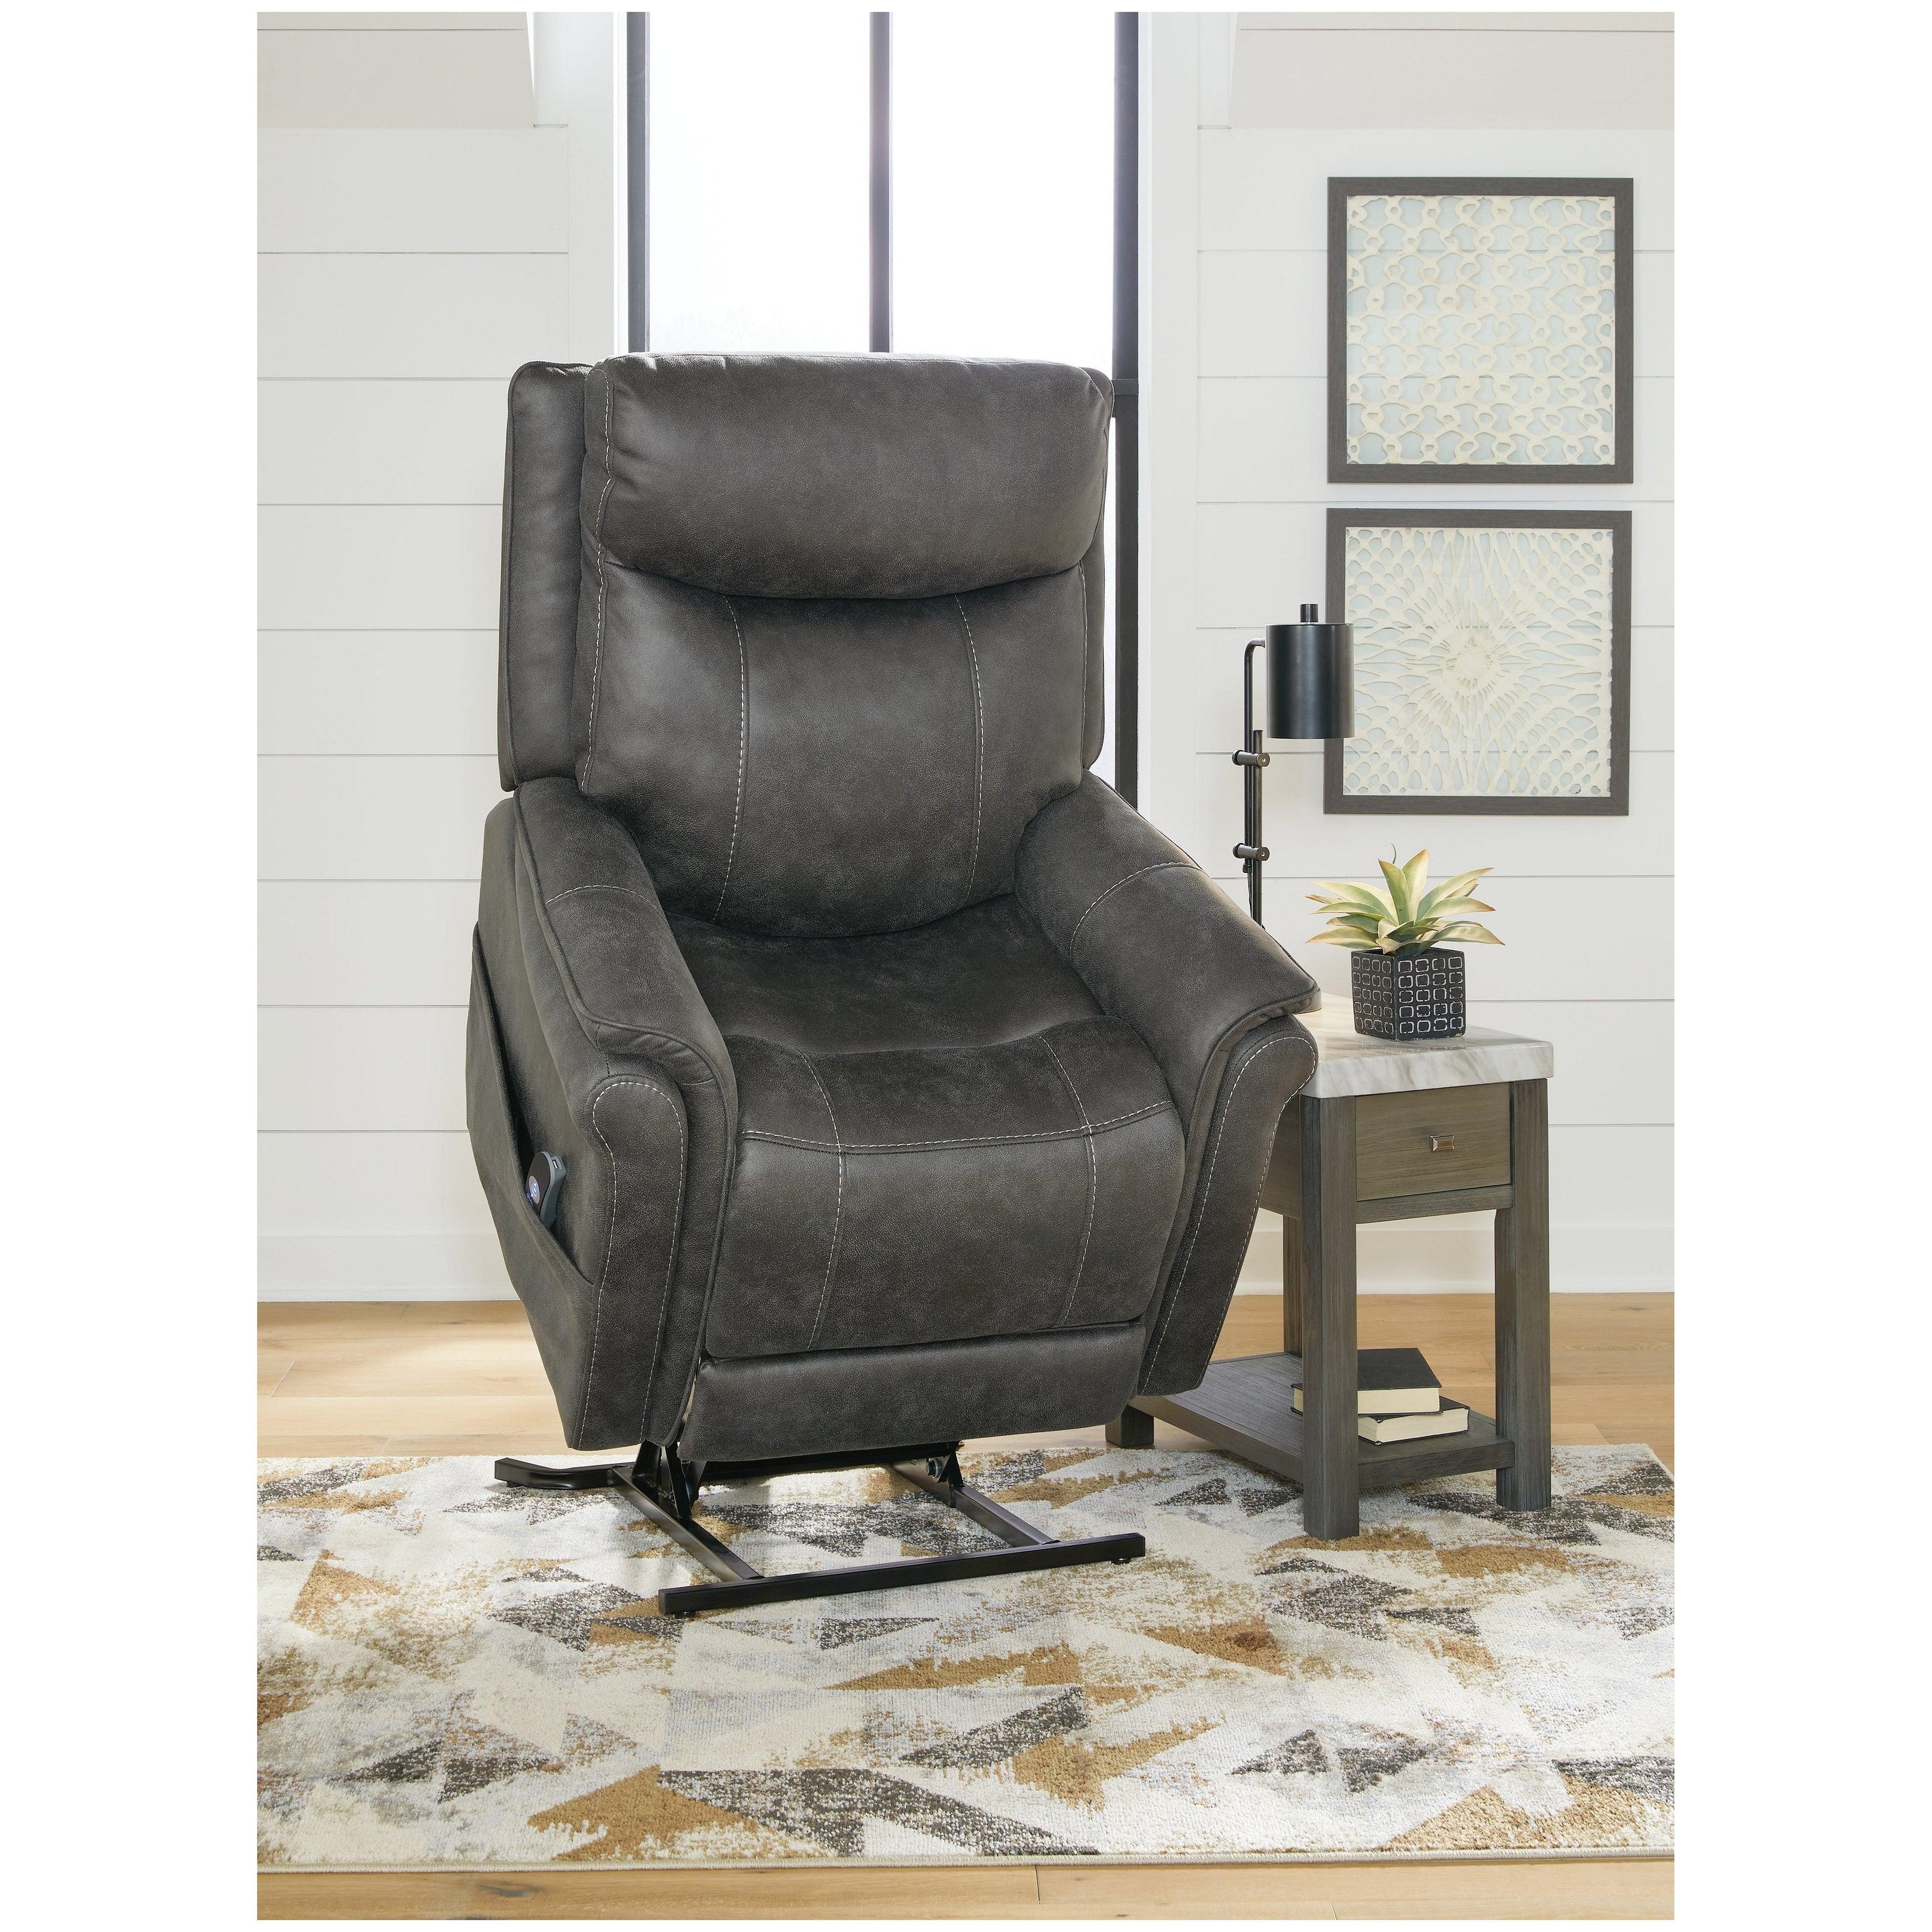 Sillón reclinable Samir Powerlift – Beck's Furniture